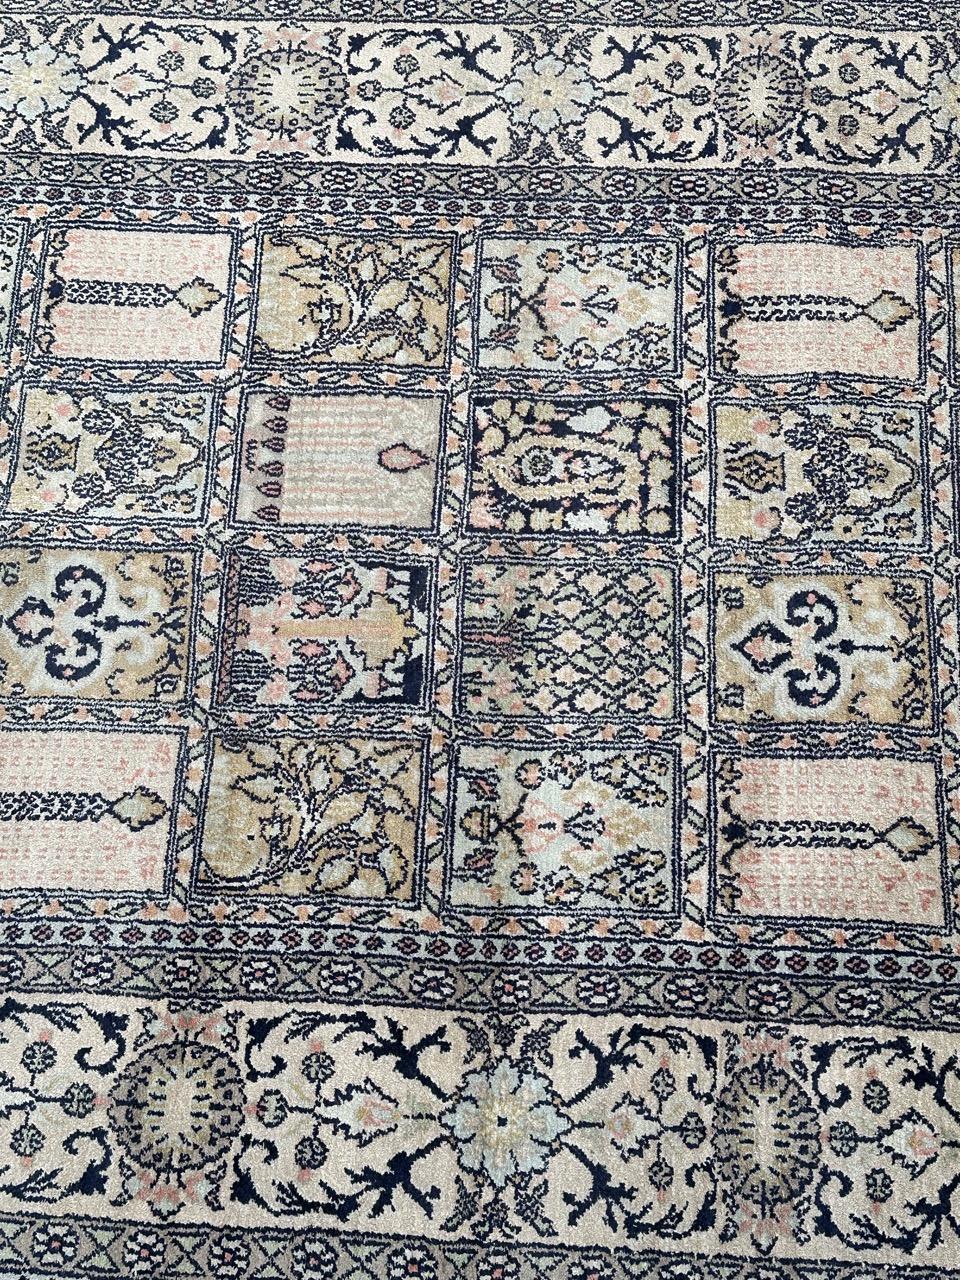 Schöner Vintage-Seiden-Kaschmir-Teppich mit schönem stilisiertem Blumenmuster und schönen hellen Farben gelb, rosa, schwarz, weiß und blau, komplett handgeknüpft mit Seide auf Baumwollbasis 

✨✨✨
